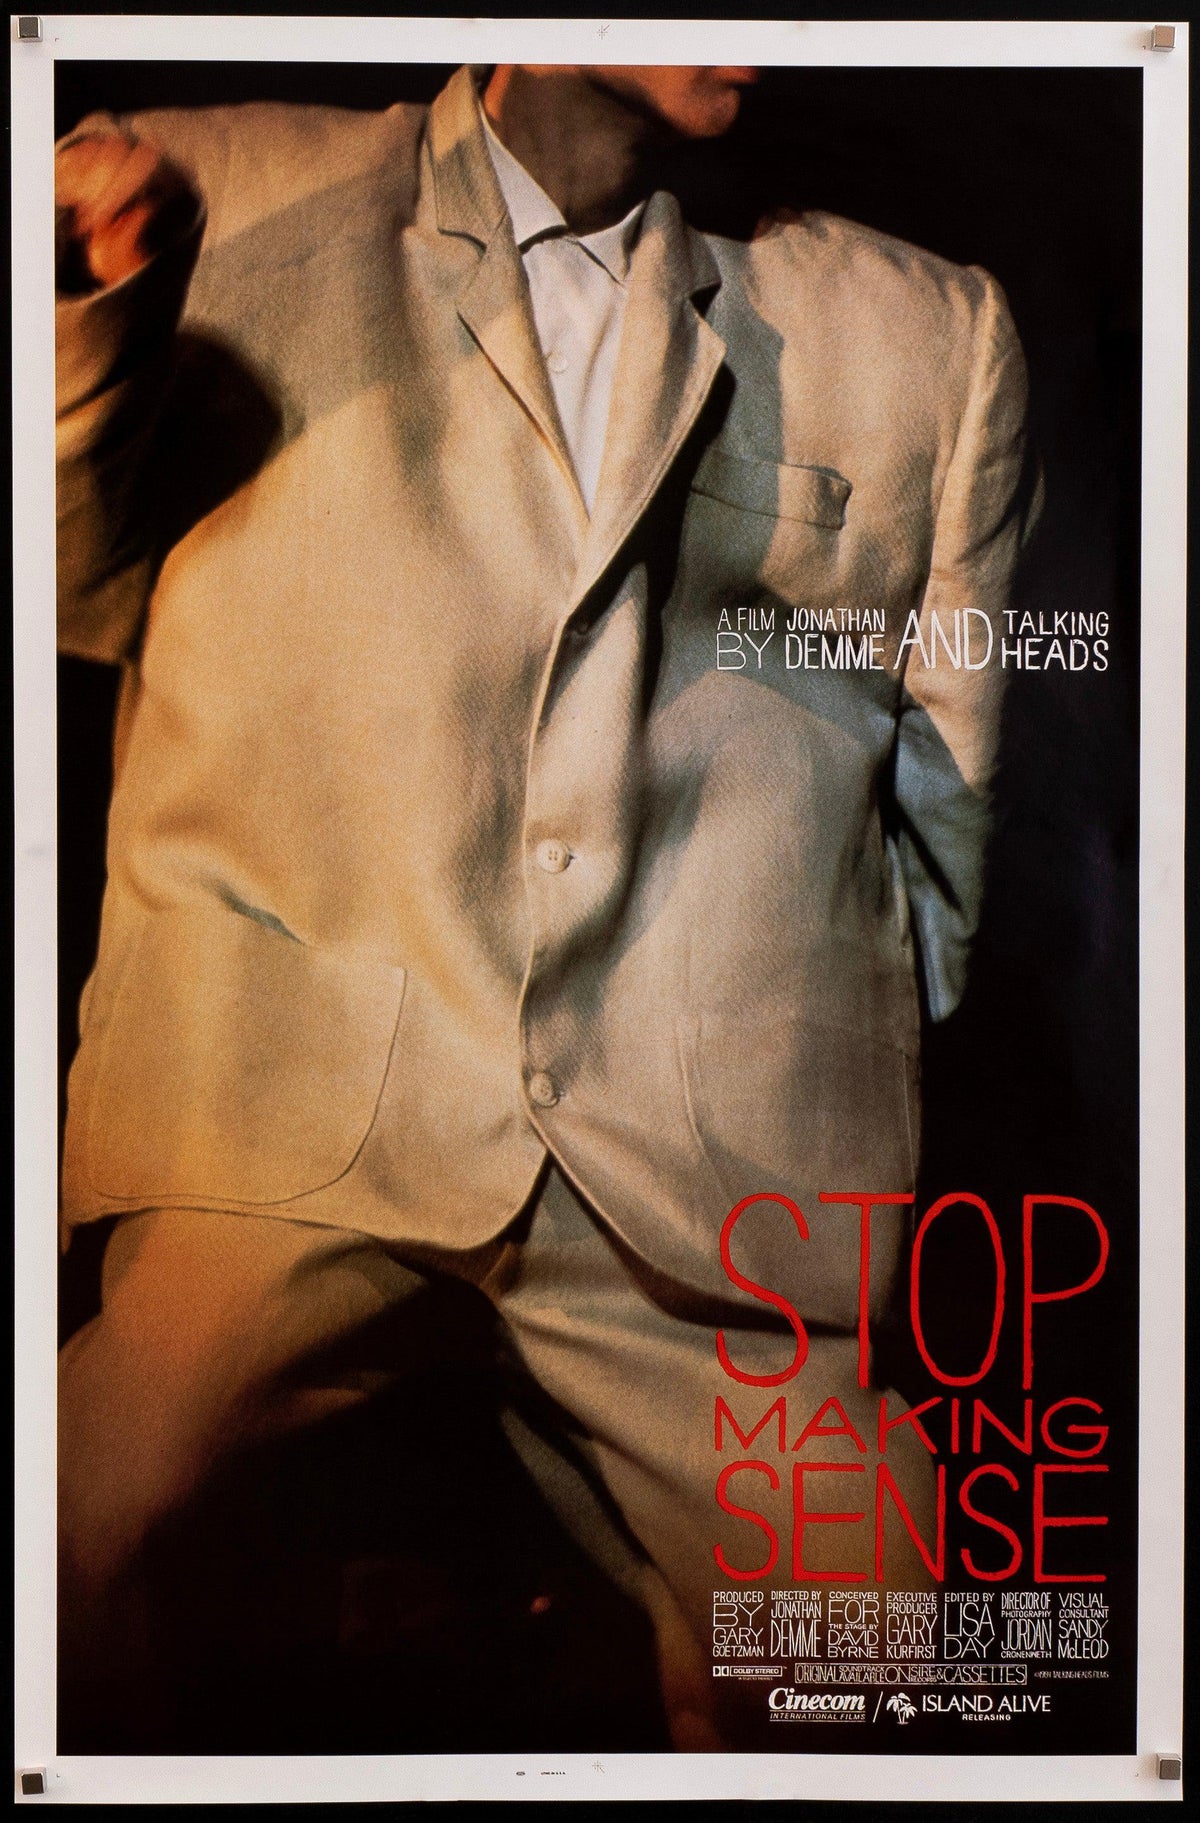 Stop Making Sense 1 Sheet (27x41) Original Vintage Movie Poster